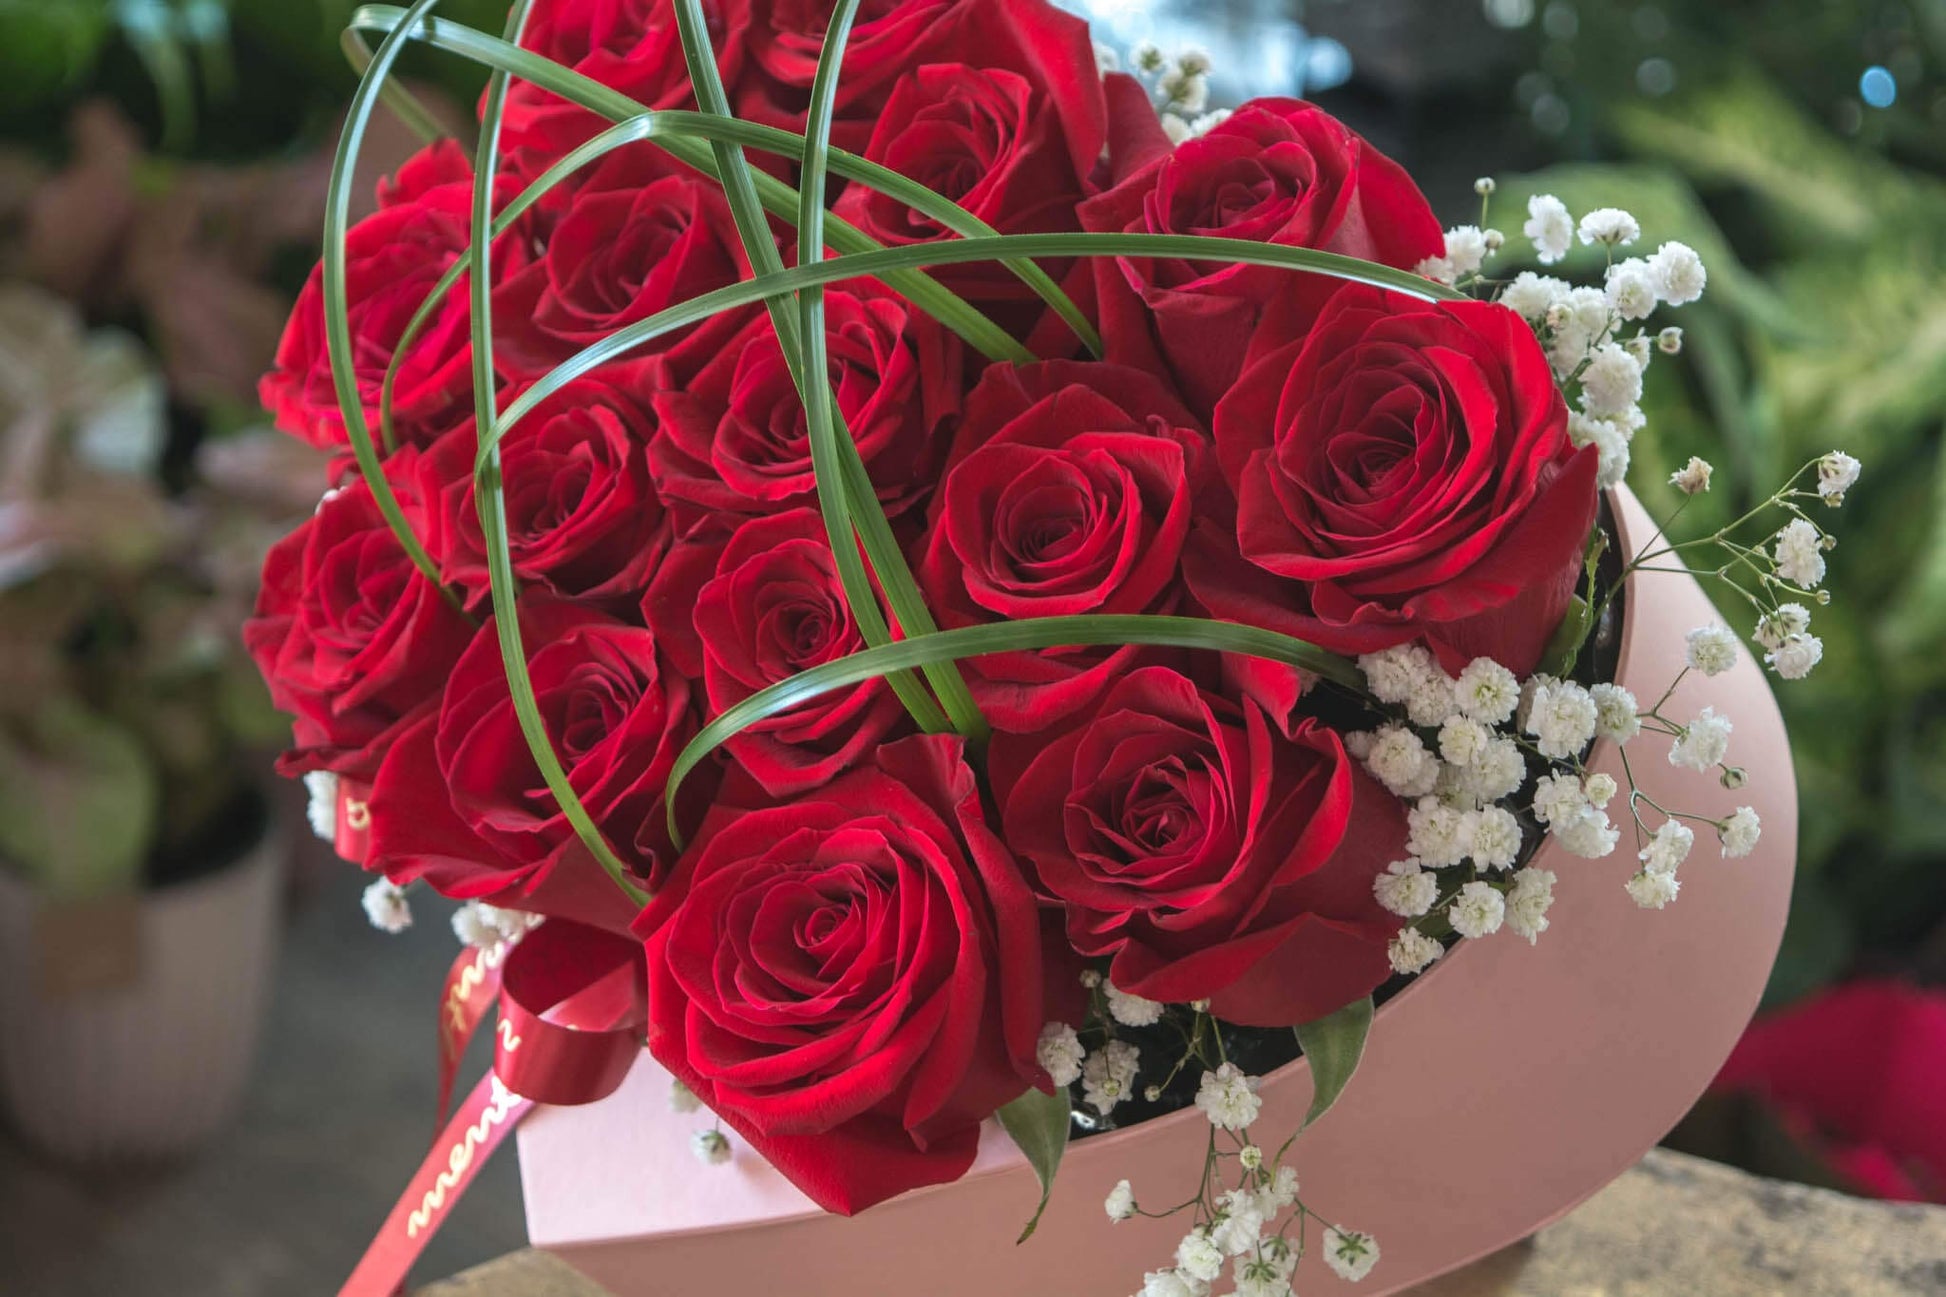 Delicatețe și pasiune: detalii din cutia noastră cu trandafiri roșii, o experiență vizuală și olfactivă întruchipând iubirea și devotamentul.